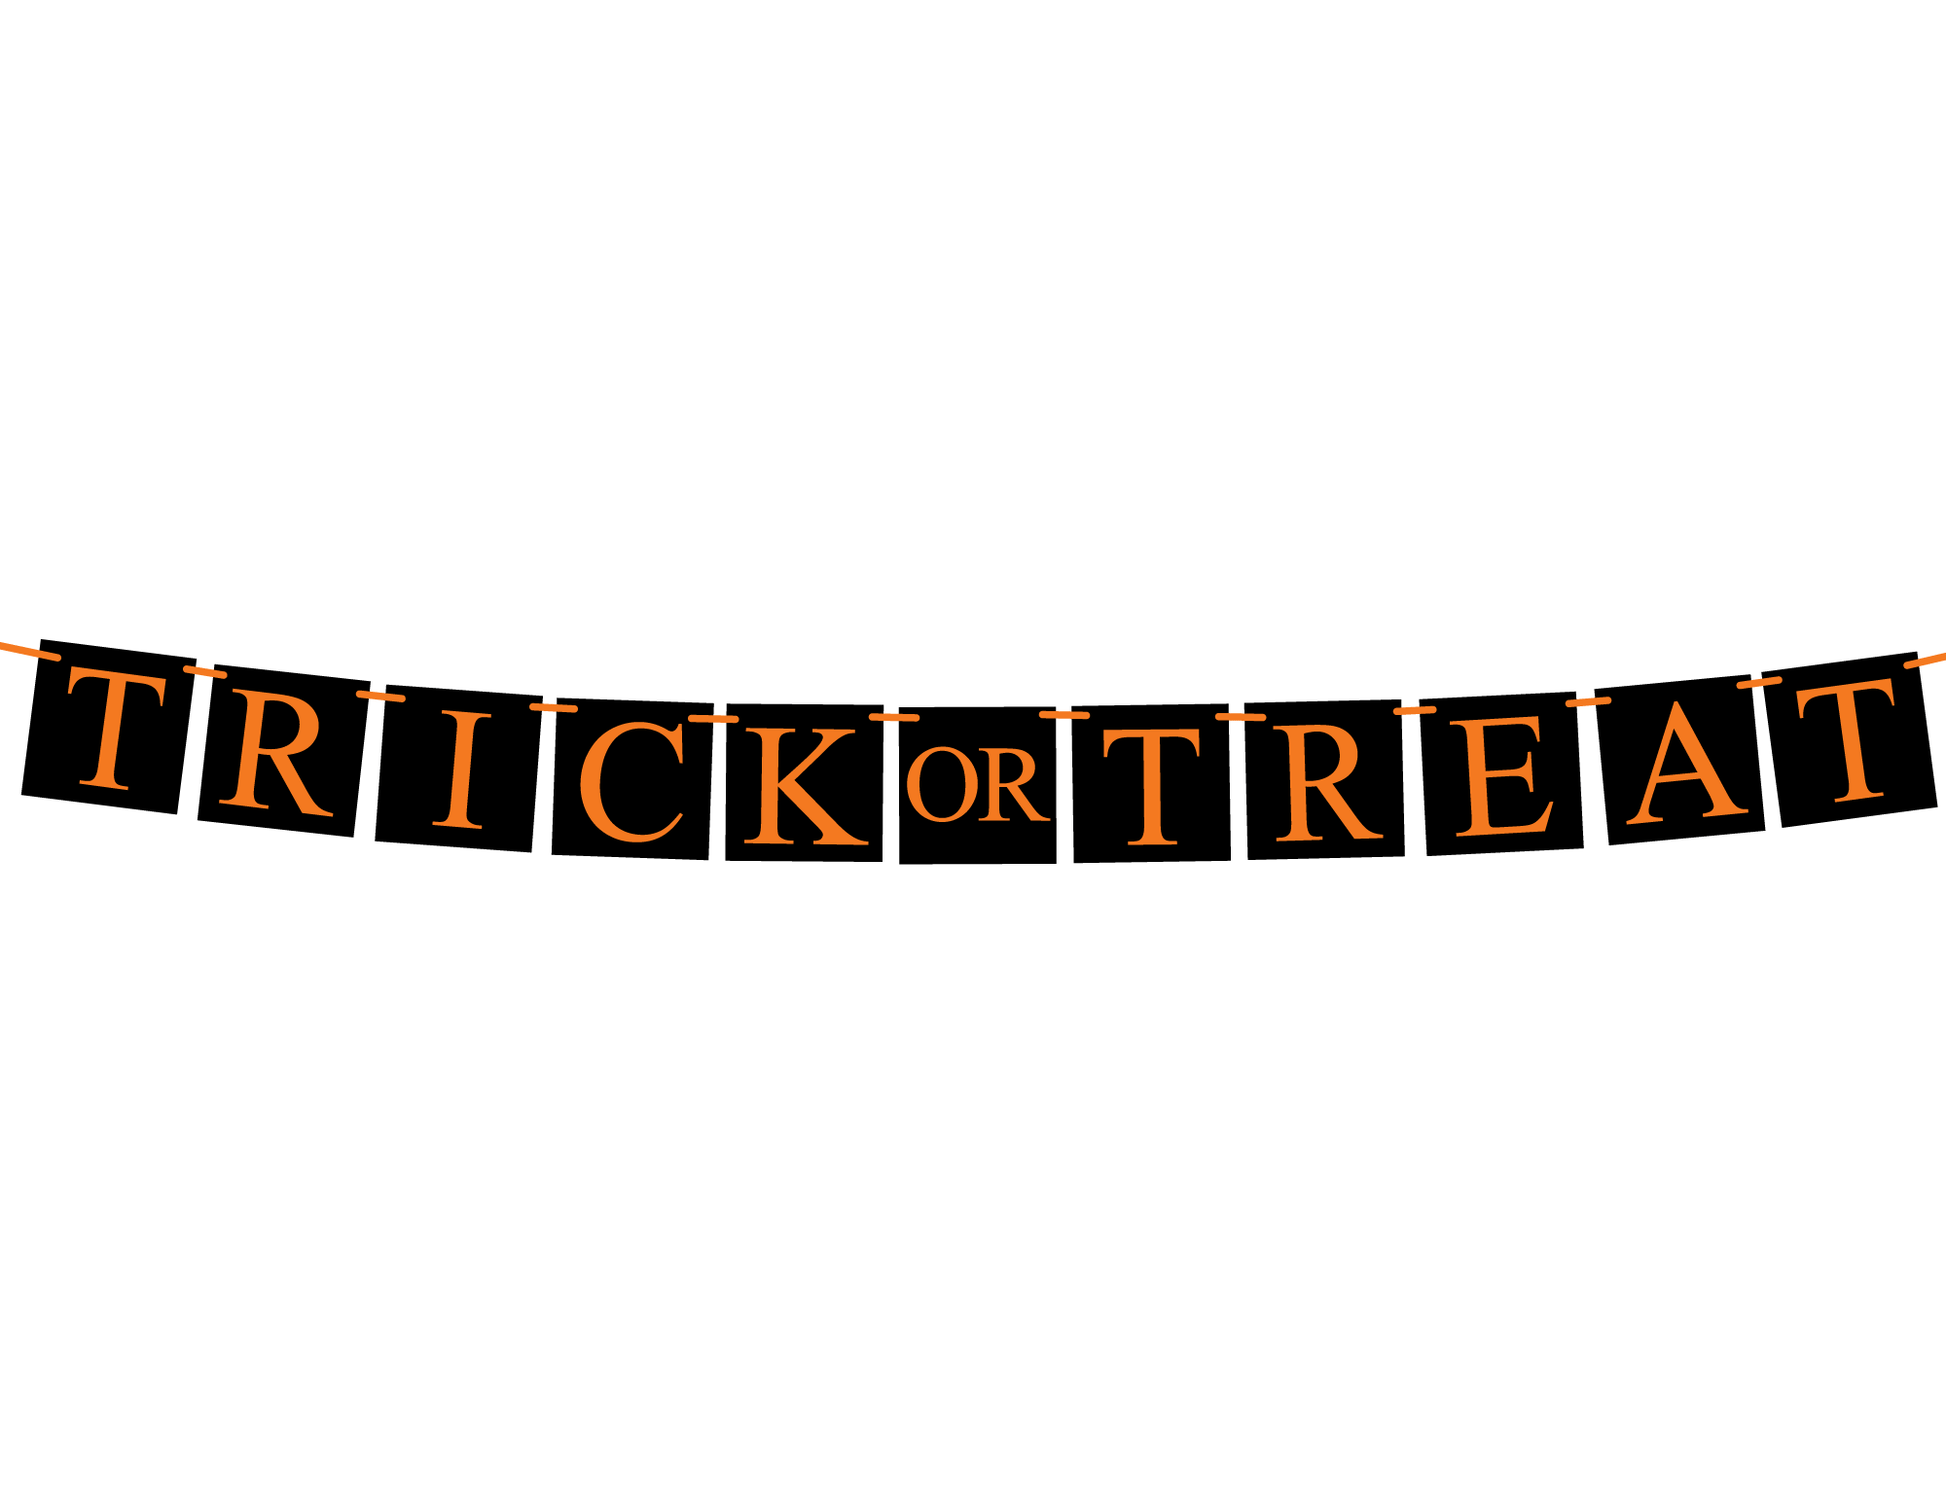 DIY Halloween Trick or Treat Banner - Celebrating Together